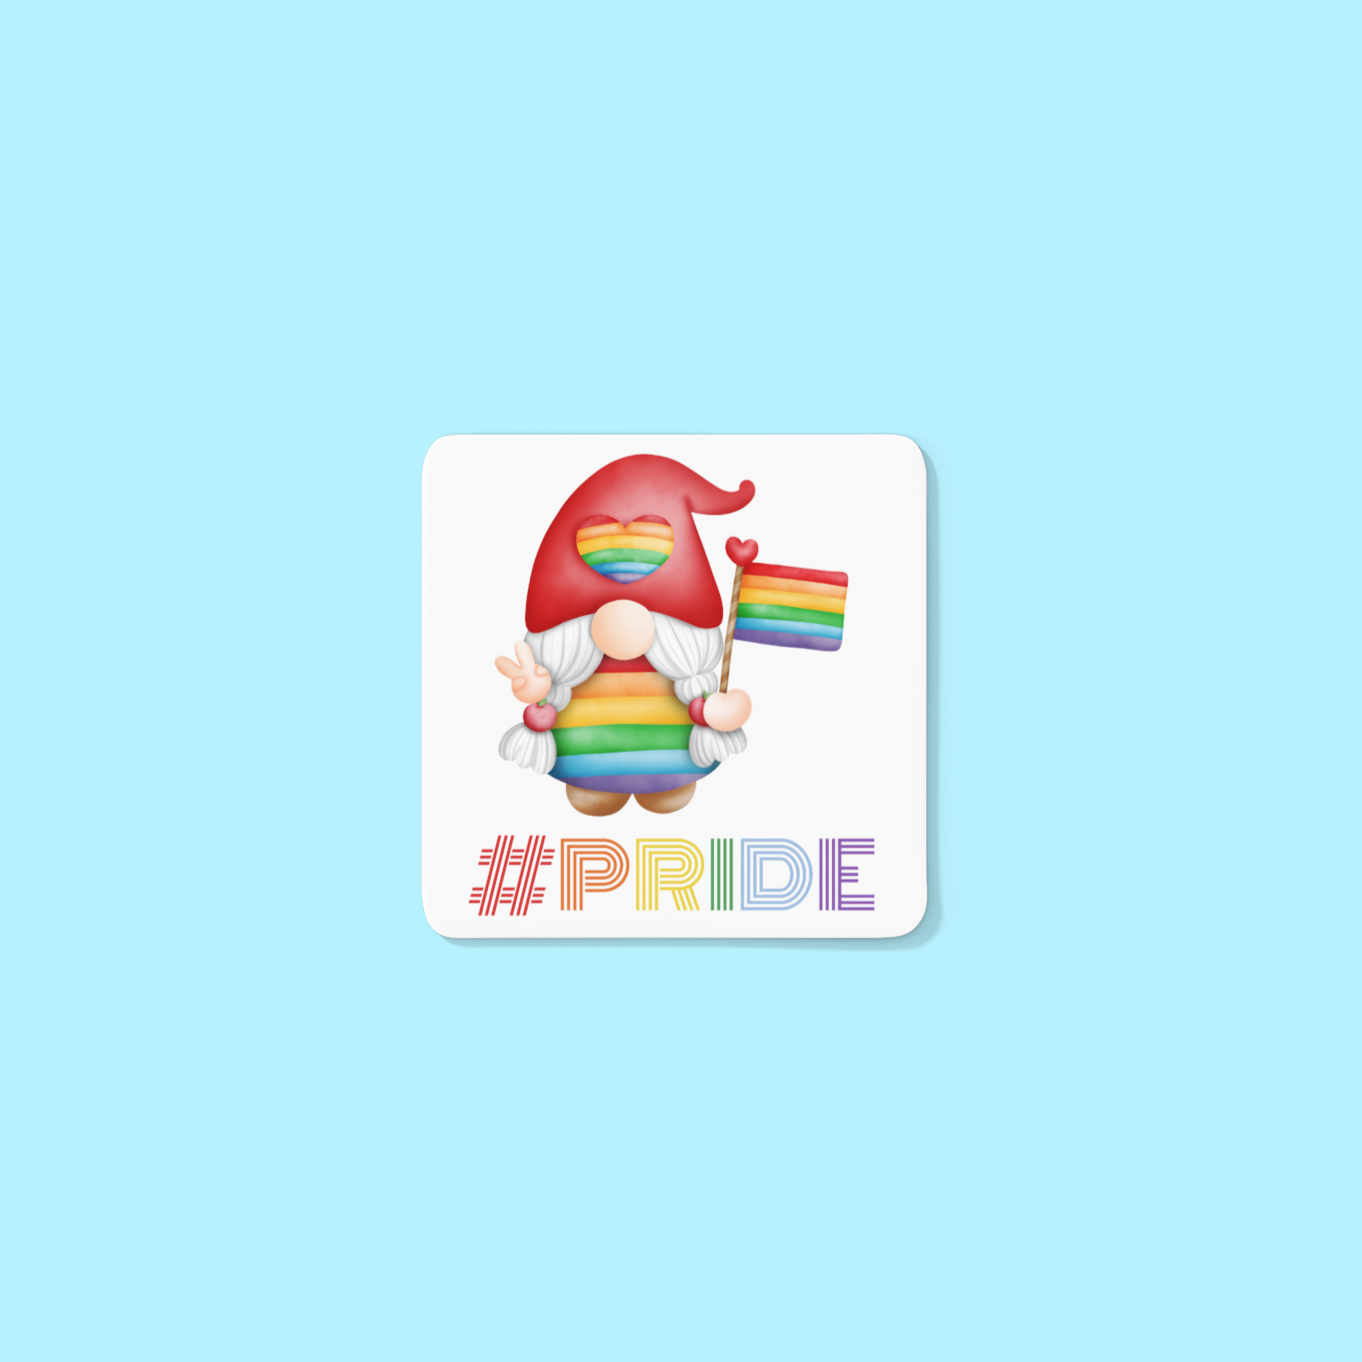 Gnome lady gay pride LGBTQIA coffee mug